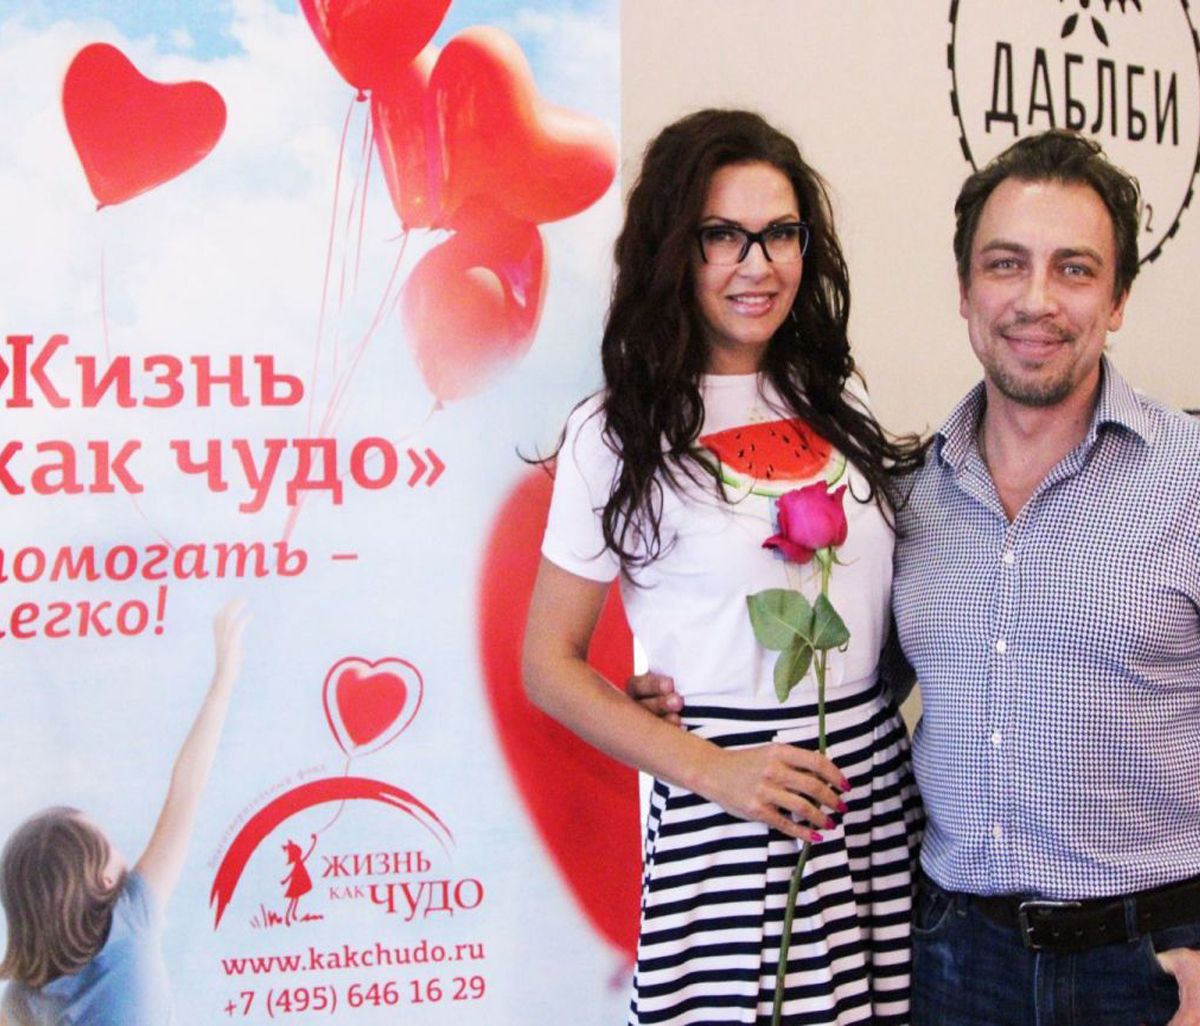 Российские артисты провели благотворительную акцию в поддержку маленьких детей